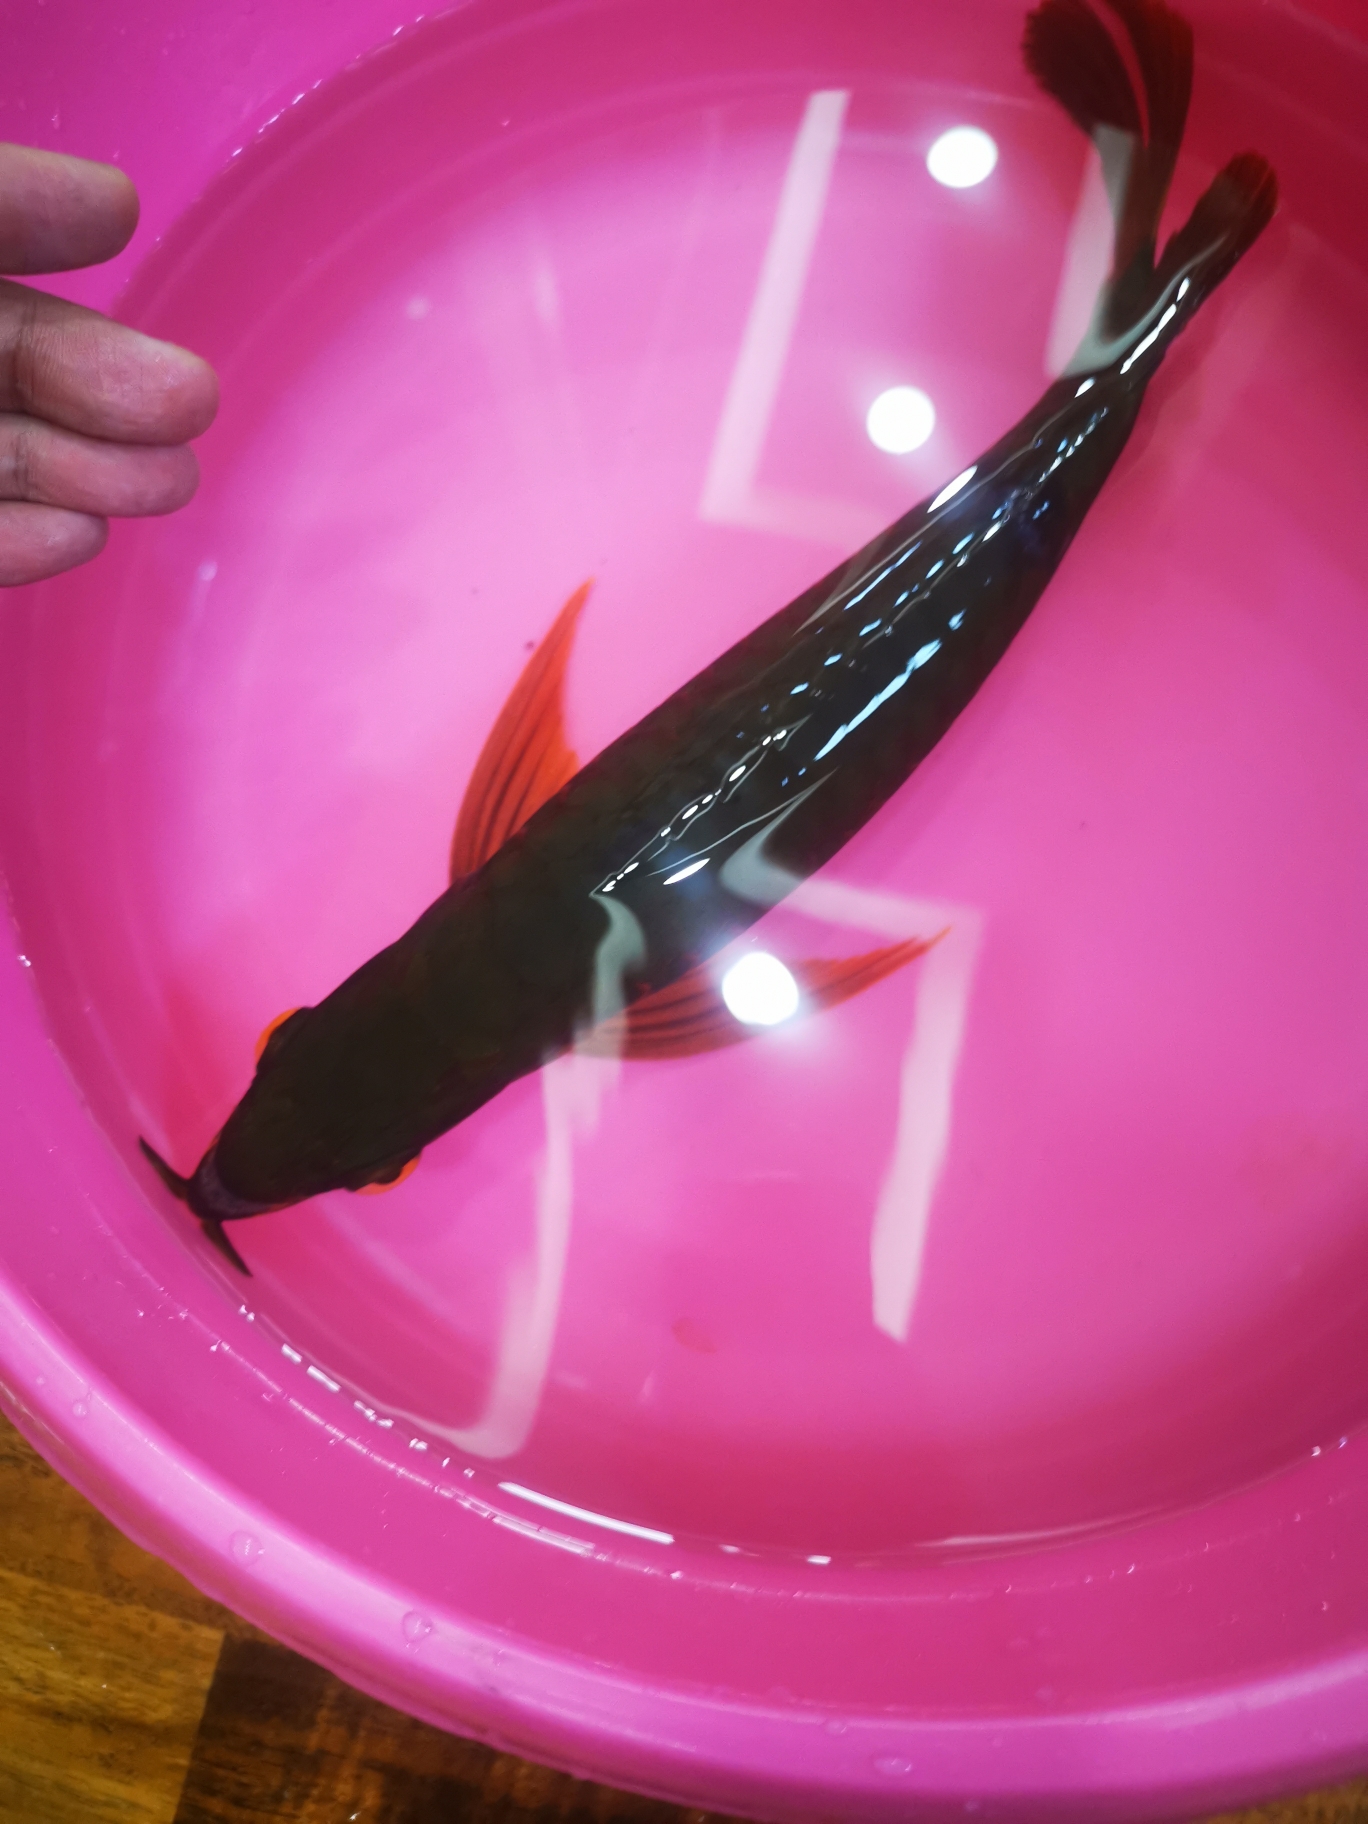 丹东水族馆鳞片撞坏了拔掉 广州观赏鱼鱼苗批发市场 第2张